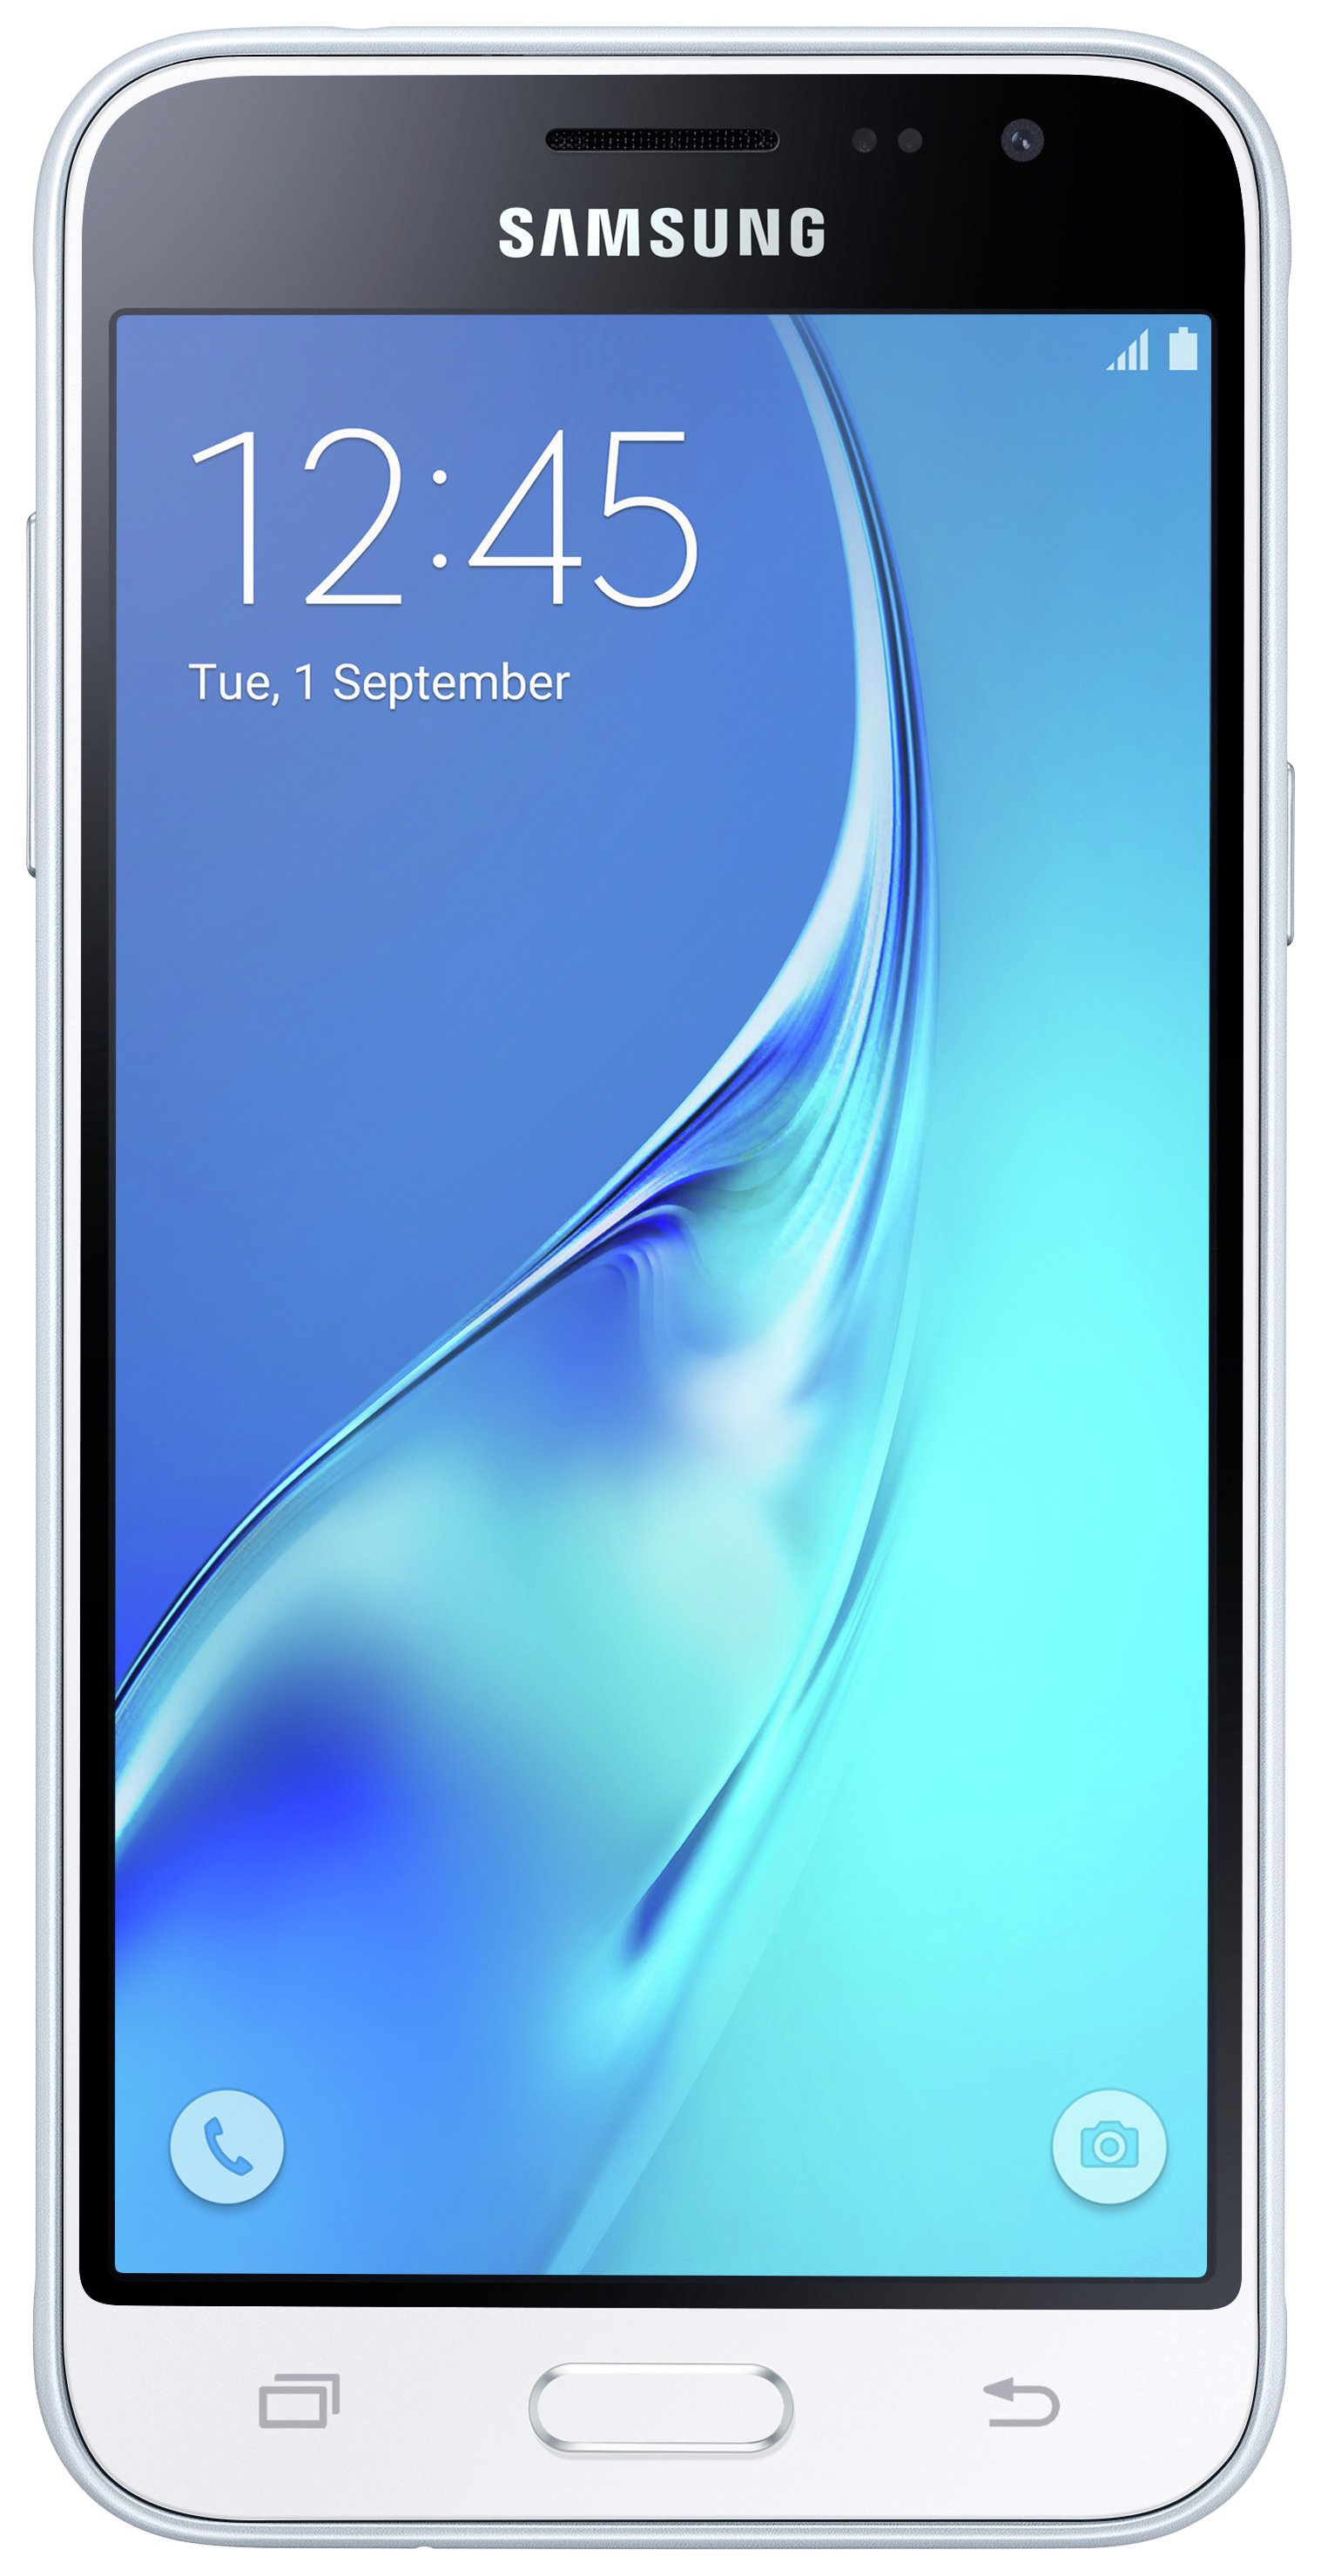 SIM Free Samsung Galaxy J3 2016 8GB Mobile Phone - White